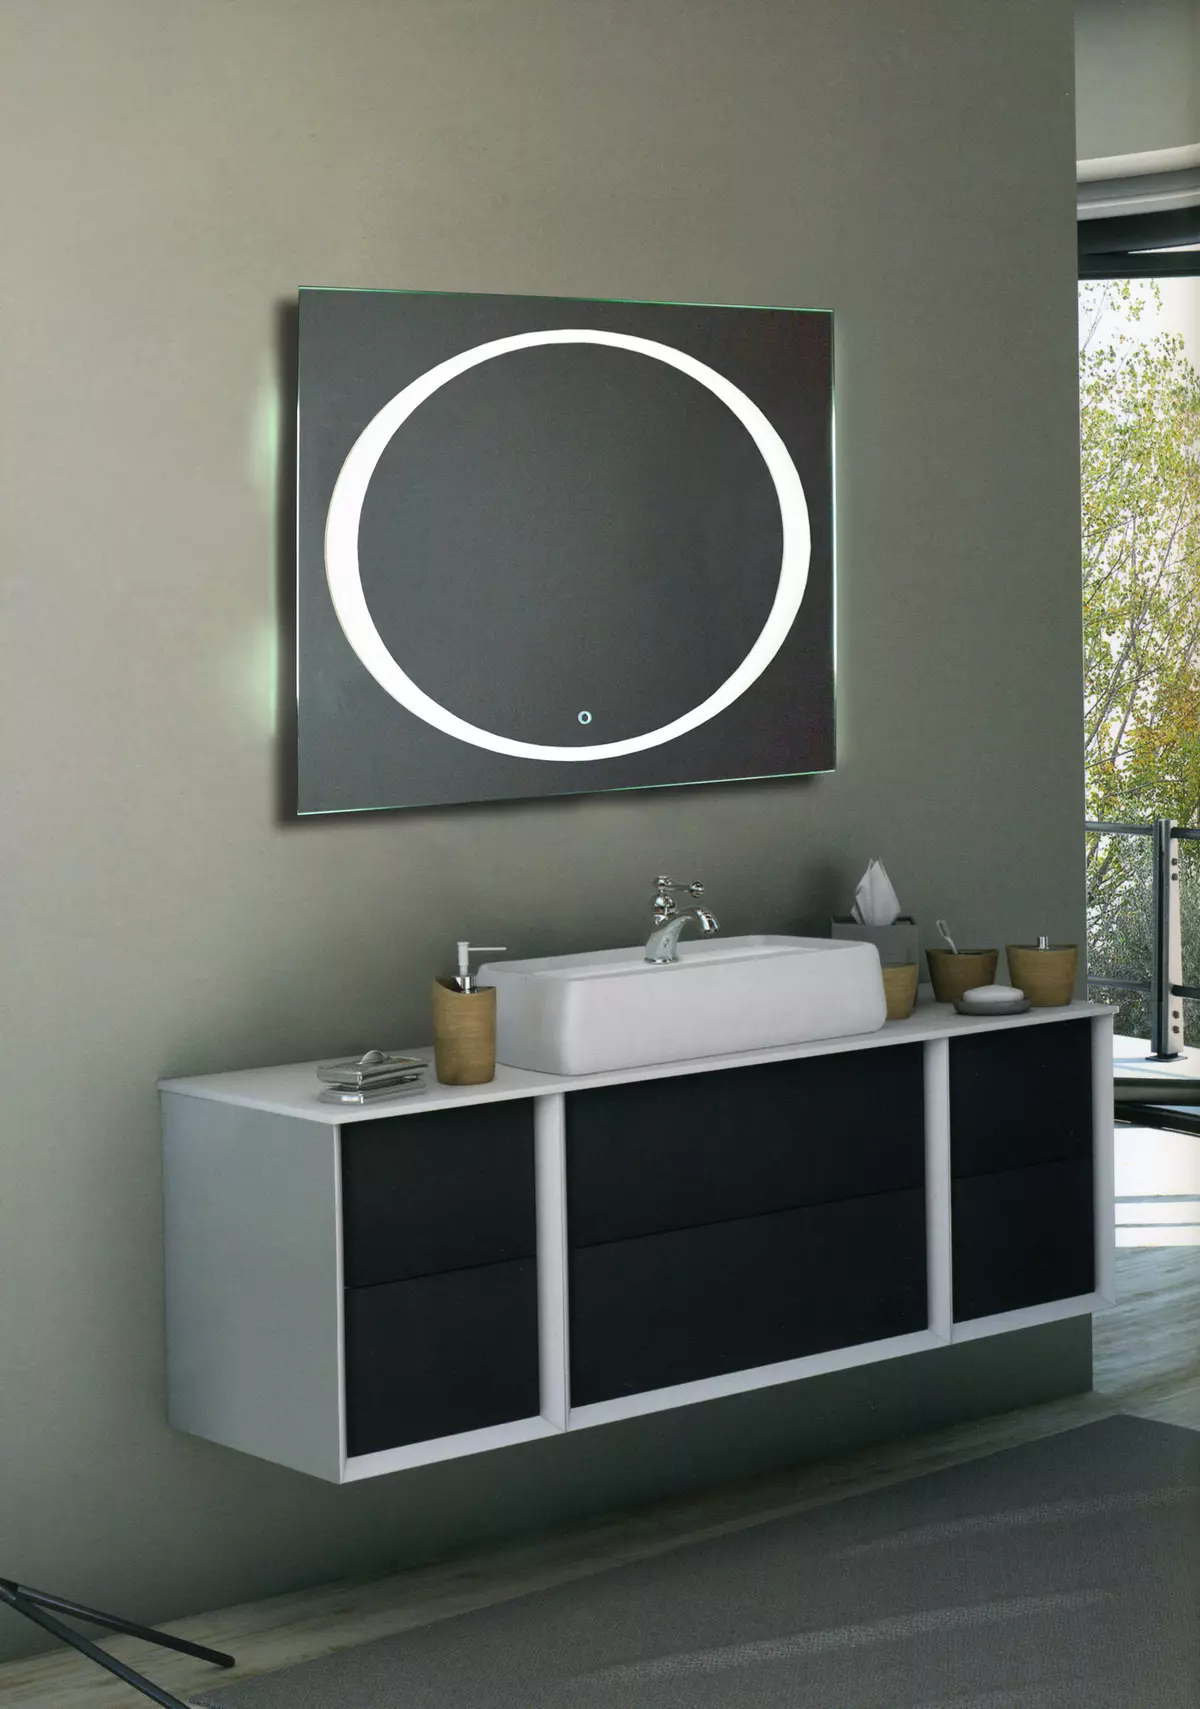 กระจกอุ่นในห้องน้ำ: วิธีการเลือกกระจกที่มีไฟส่องสว่าง, นาฬิกาและต่อต้านธรรมดาในห้องน้ำหรือไม่? คุณสมบัติของกระจกร้อน 10072_4